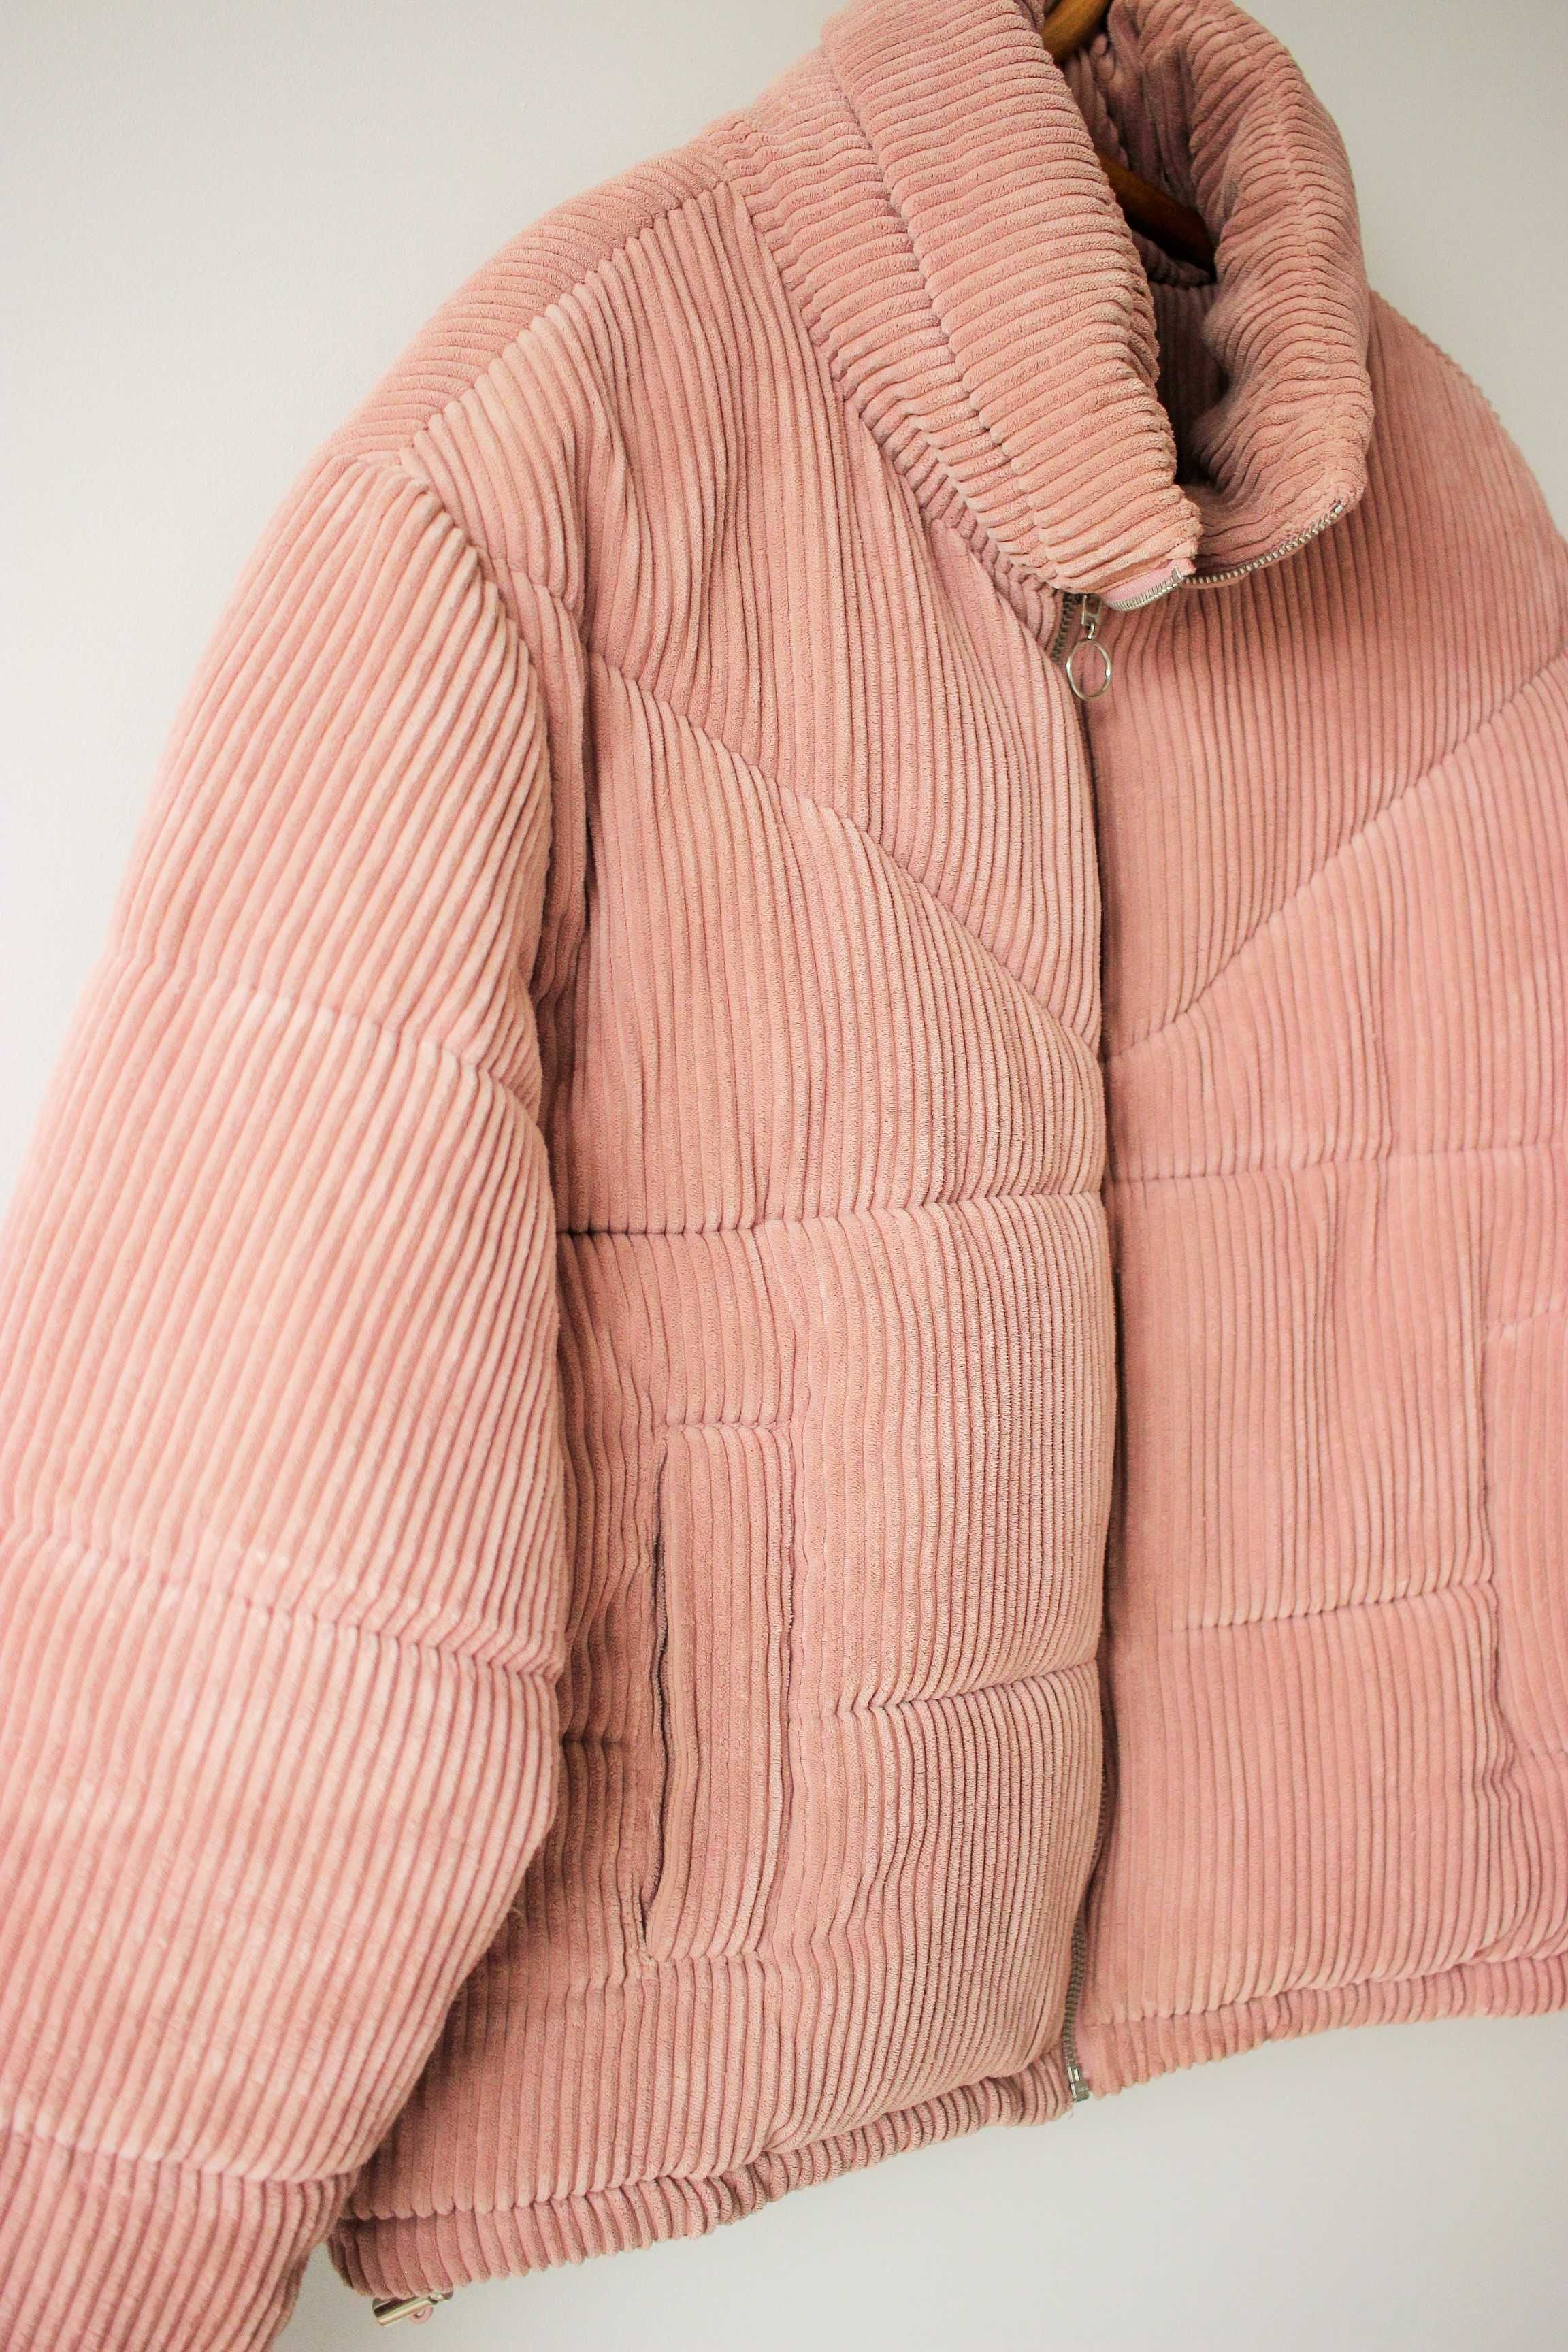 Ciepła kurtka sztruksowa, rozm.L/XL, różowa, wiosenna, bomber